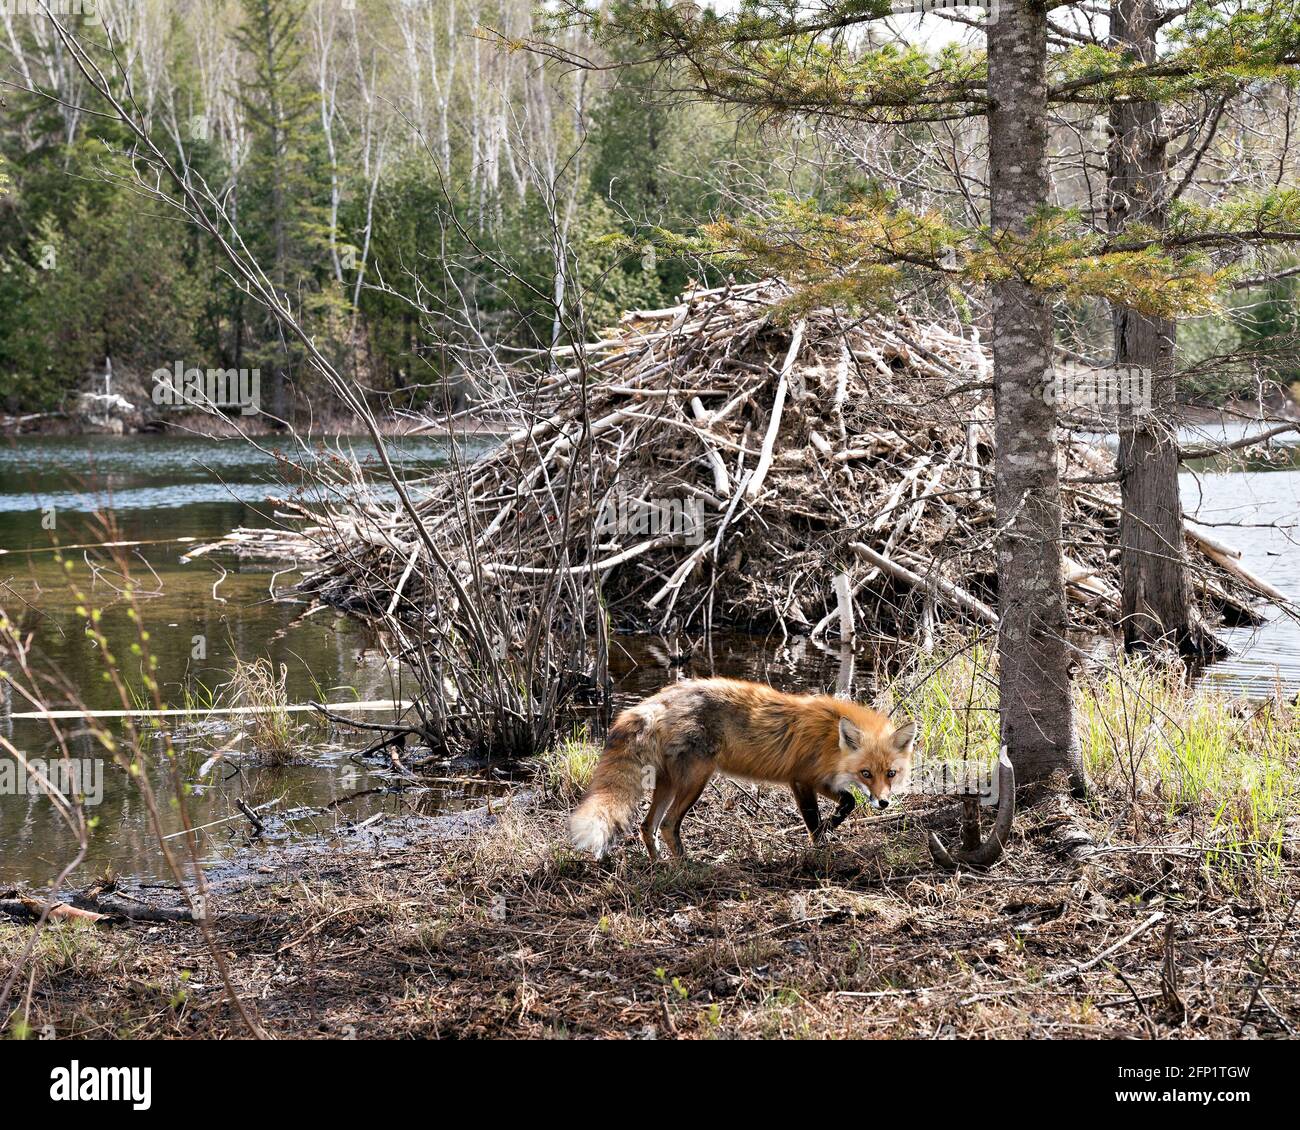 Volpe rossa da un rifugio castoro con acqua, foresta e sfondo castoro Lodge nel suo habitat e ambiente. Immagine FOX. Immagine. Verticale. Foto. Foto Stock